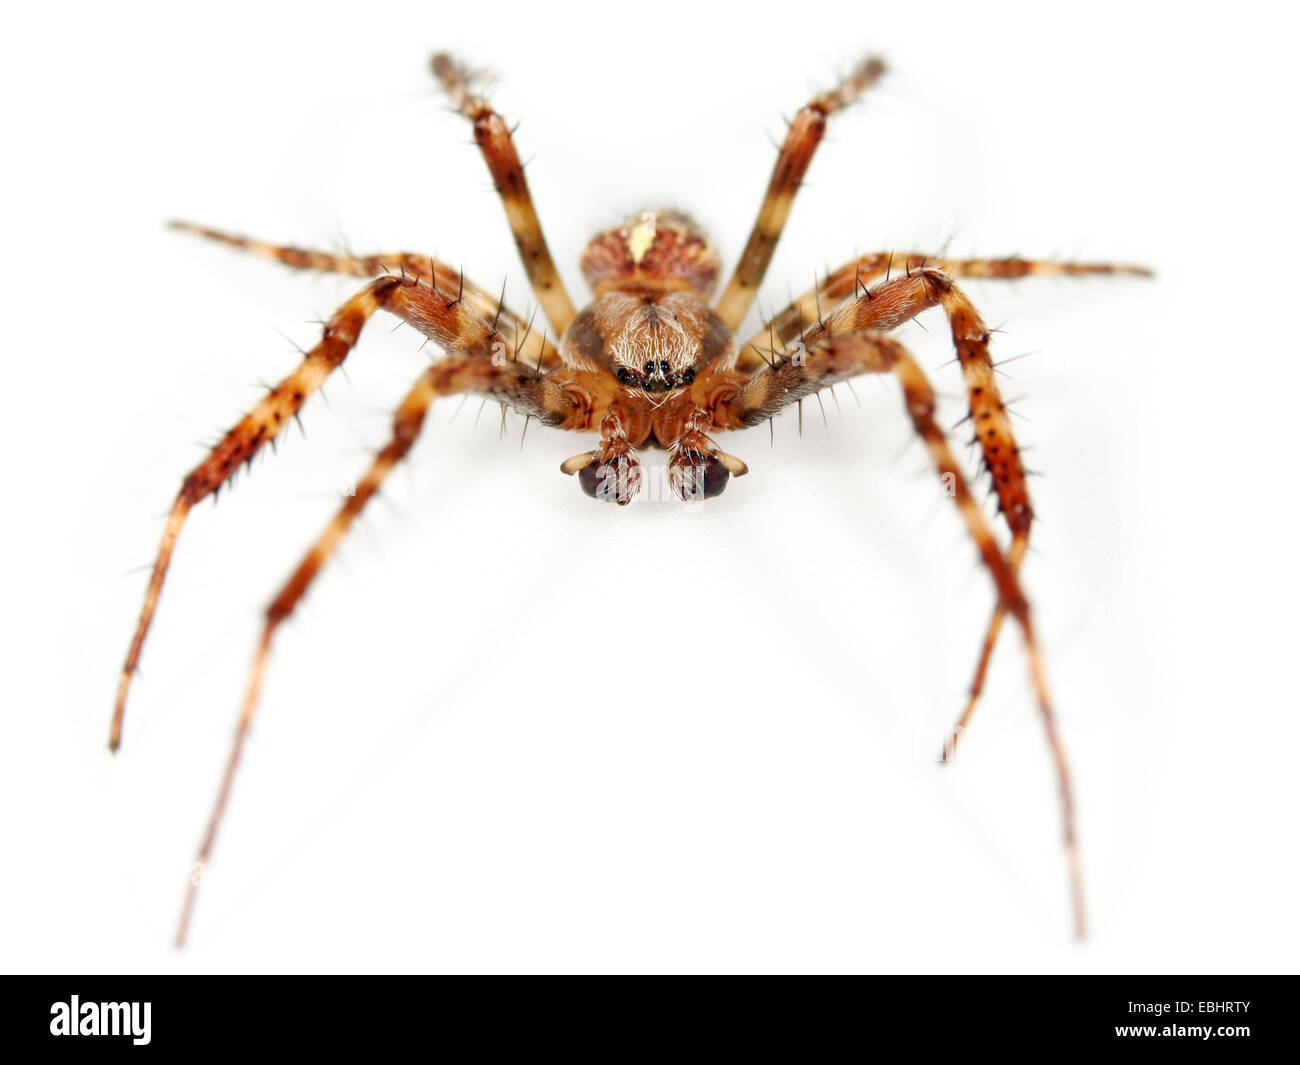 Ein Kreuz spider oder Gartenkreuzspinne (Araneus Quadratus) auf weißem Hintergrund. Die Spinnen sind ein Teil der Familie - Araneidae Orbweavers. Stockfoto